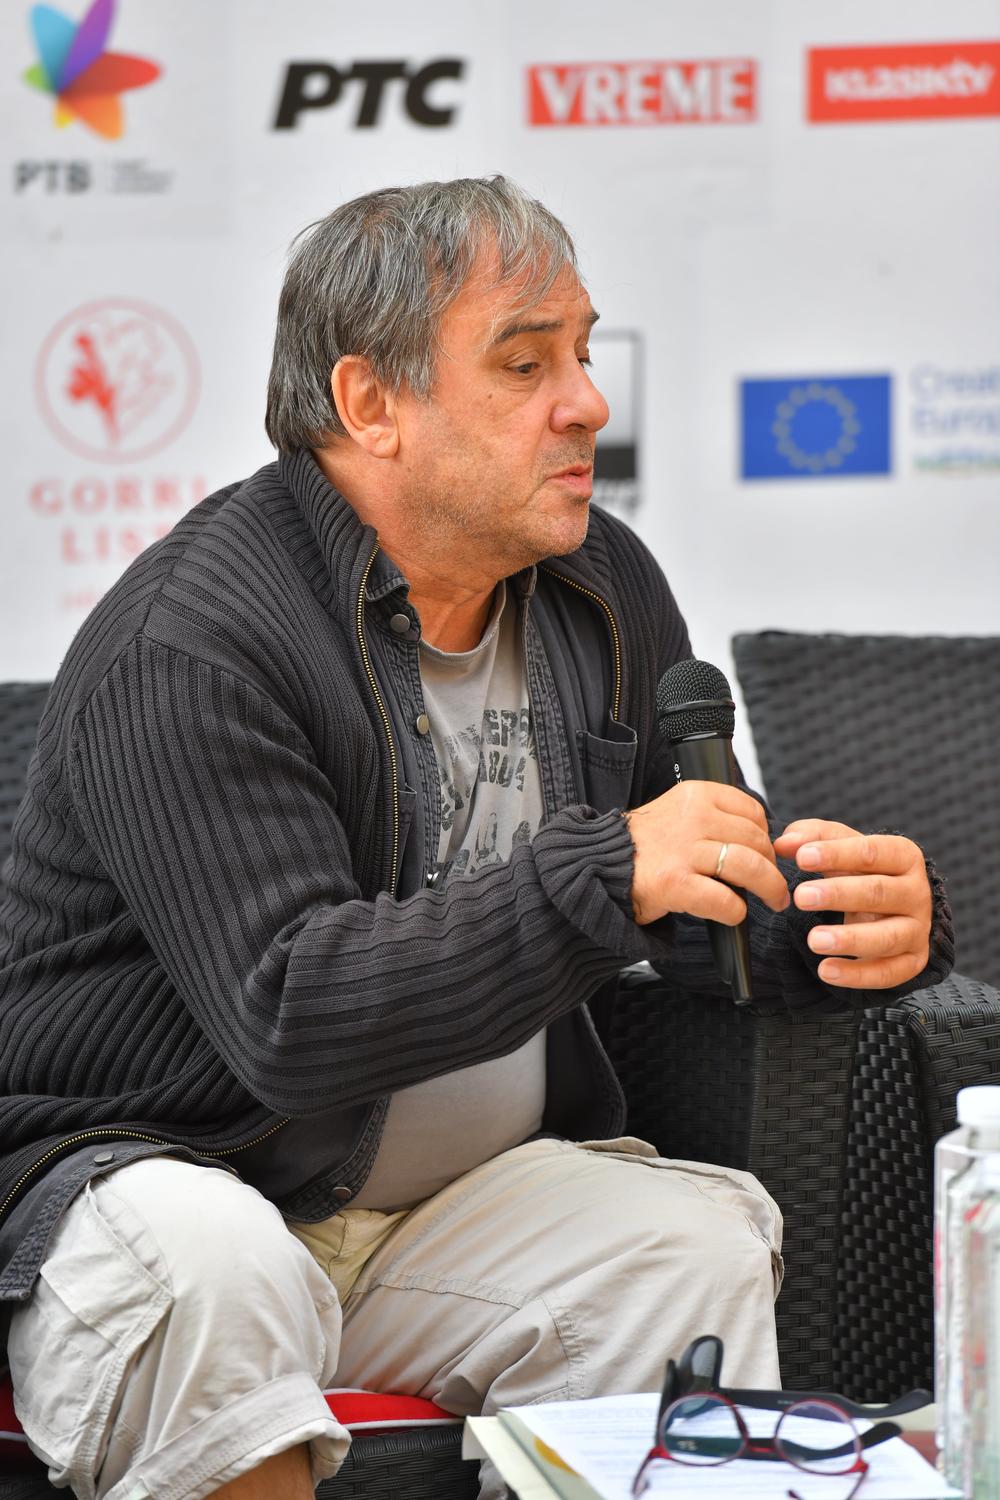 Reditelj Goran Radovanović, član žirija Glavnog programa